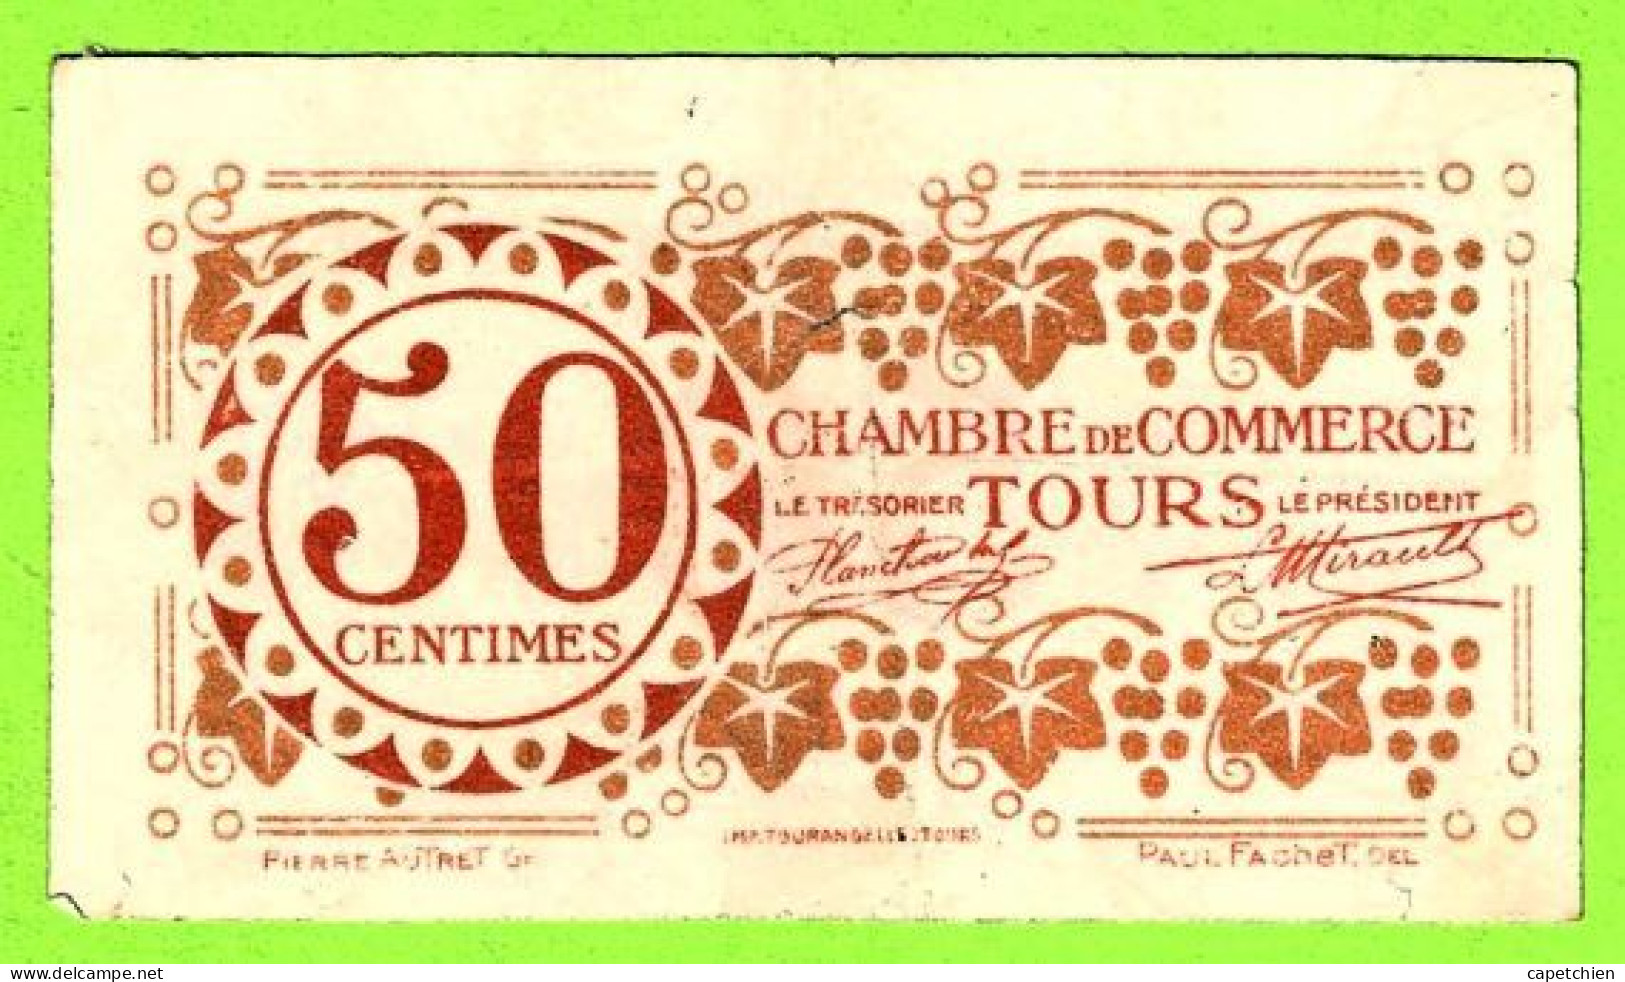 FRANCE / CHAMBRE De COMMERCE De TOURS / 50 CENTIMES/ 27 DECEMBRE 1920 / 461,639 / SERIE 3eme - Handelskammer